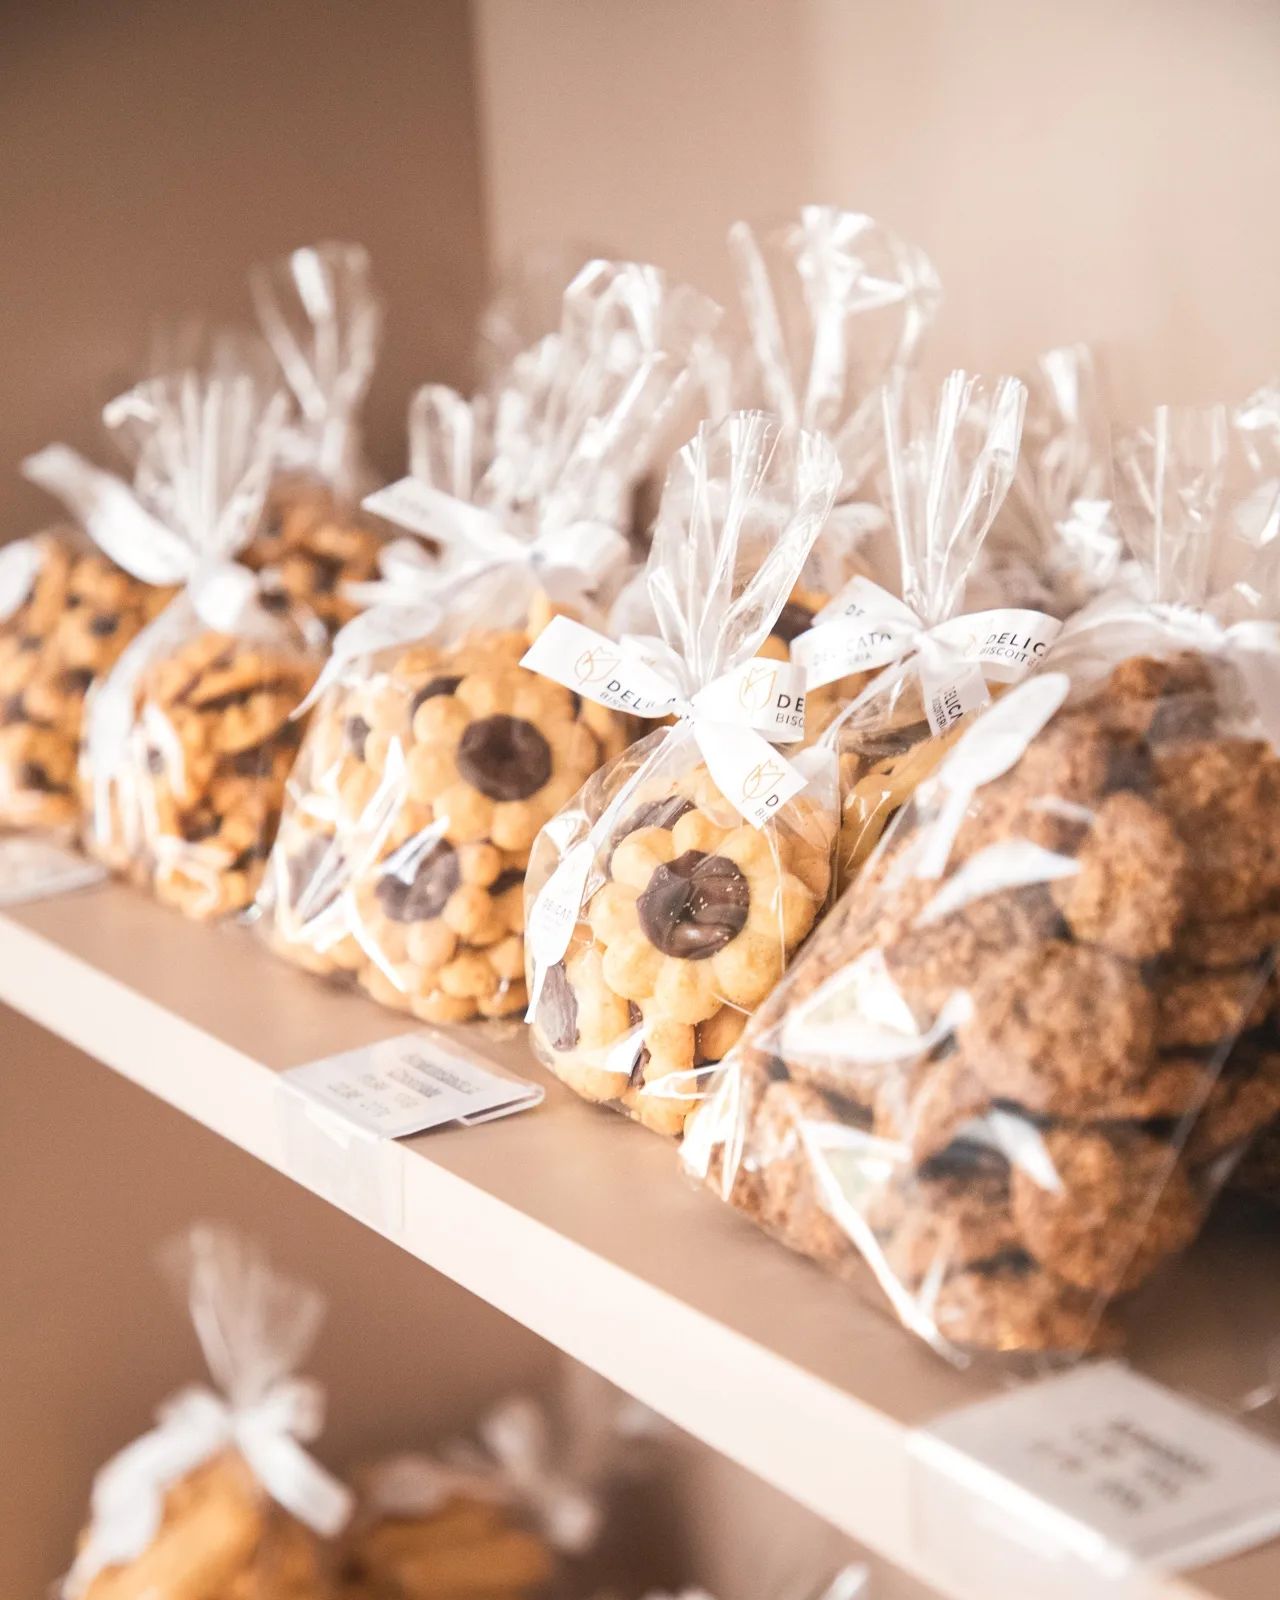 Loja aberta sábado até 12h30, com os melhores biscoitos artesanais a pronta entrega para o seu fim de semana!😃😋

Estamos